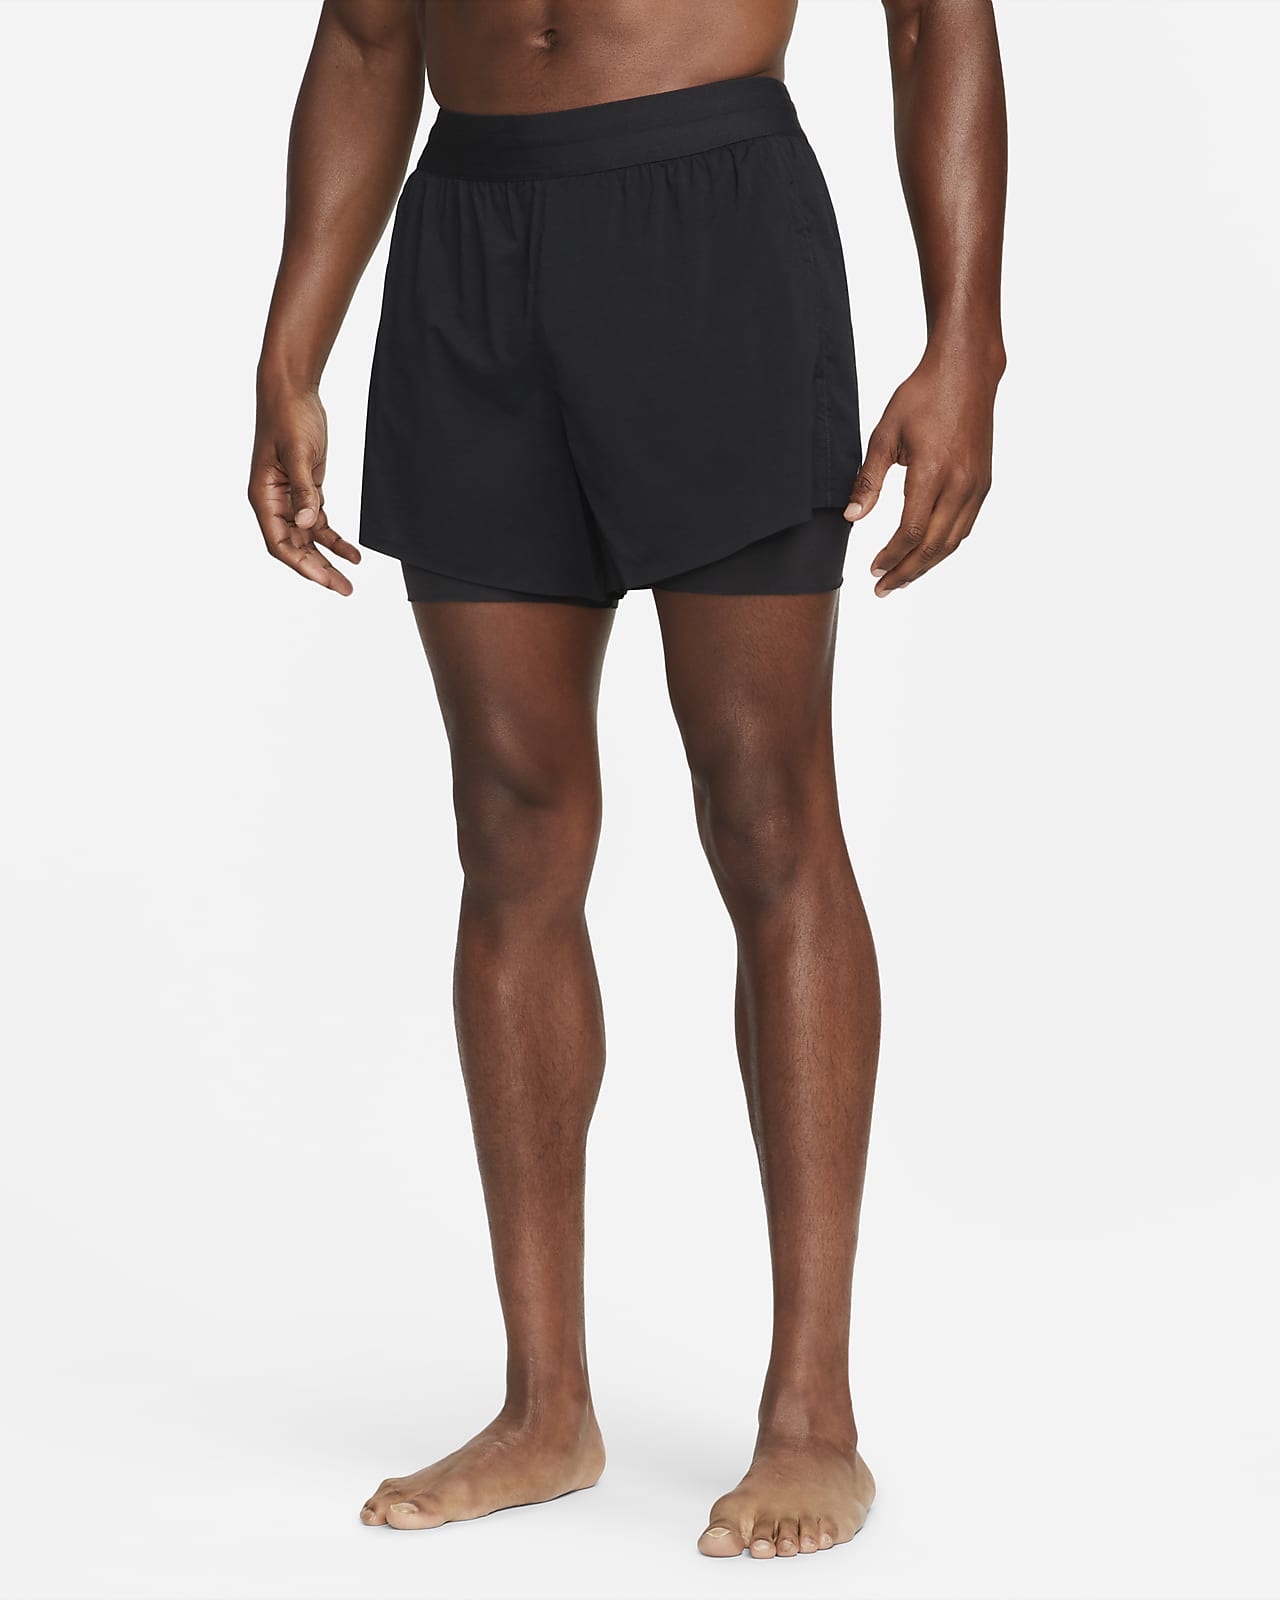 Nike Yoga Men's Hot Yoga Shorts. Nike PT